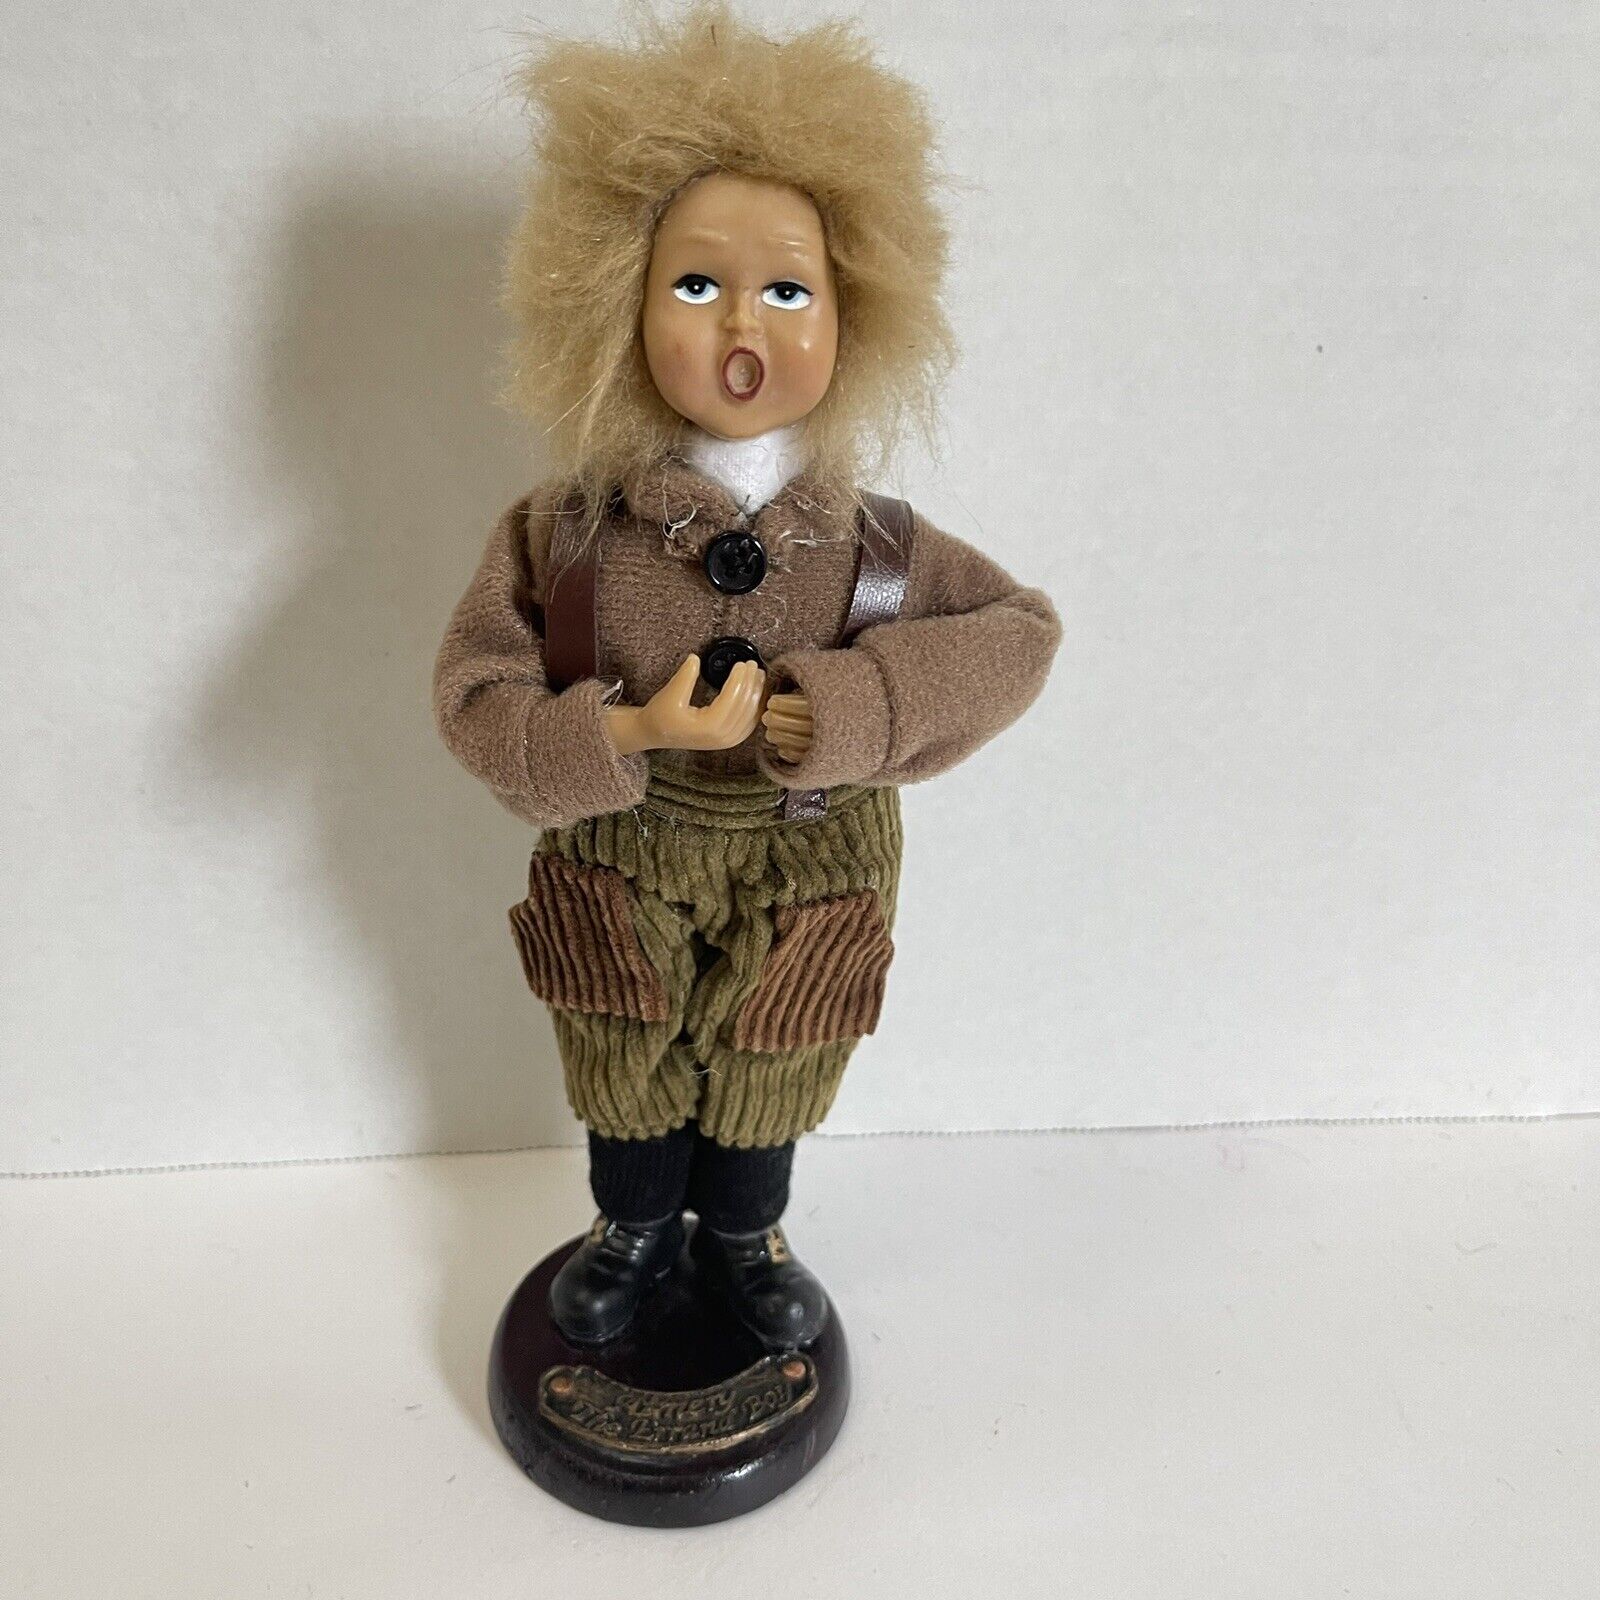 Vintage Aimery the Errand Boy Christmas Caroler Doll Figurine 9”